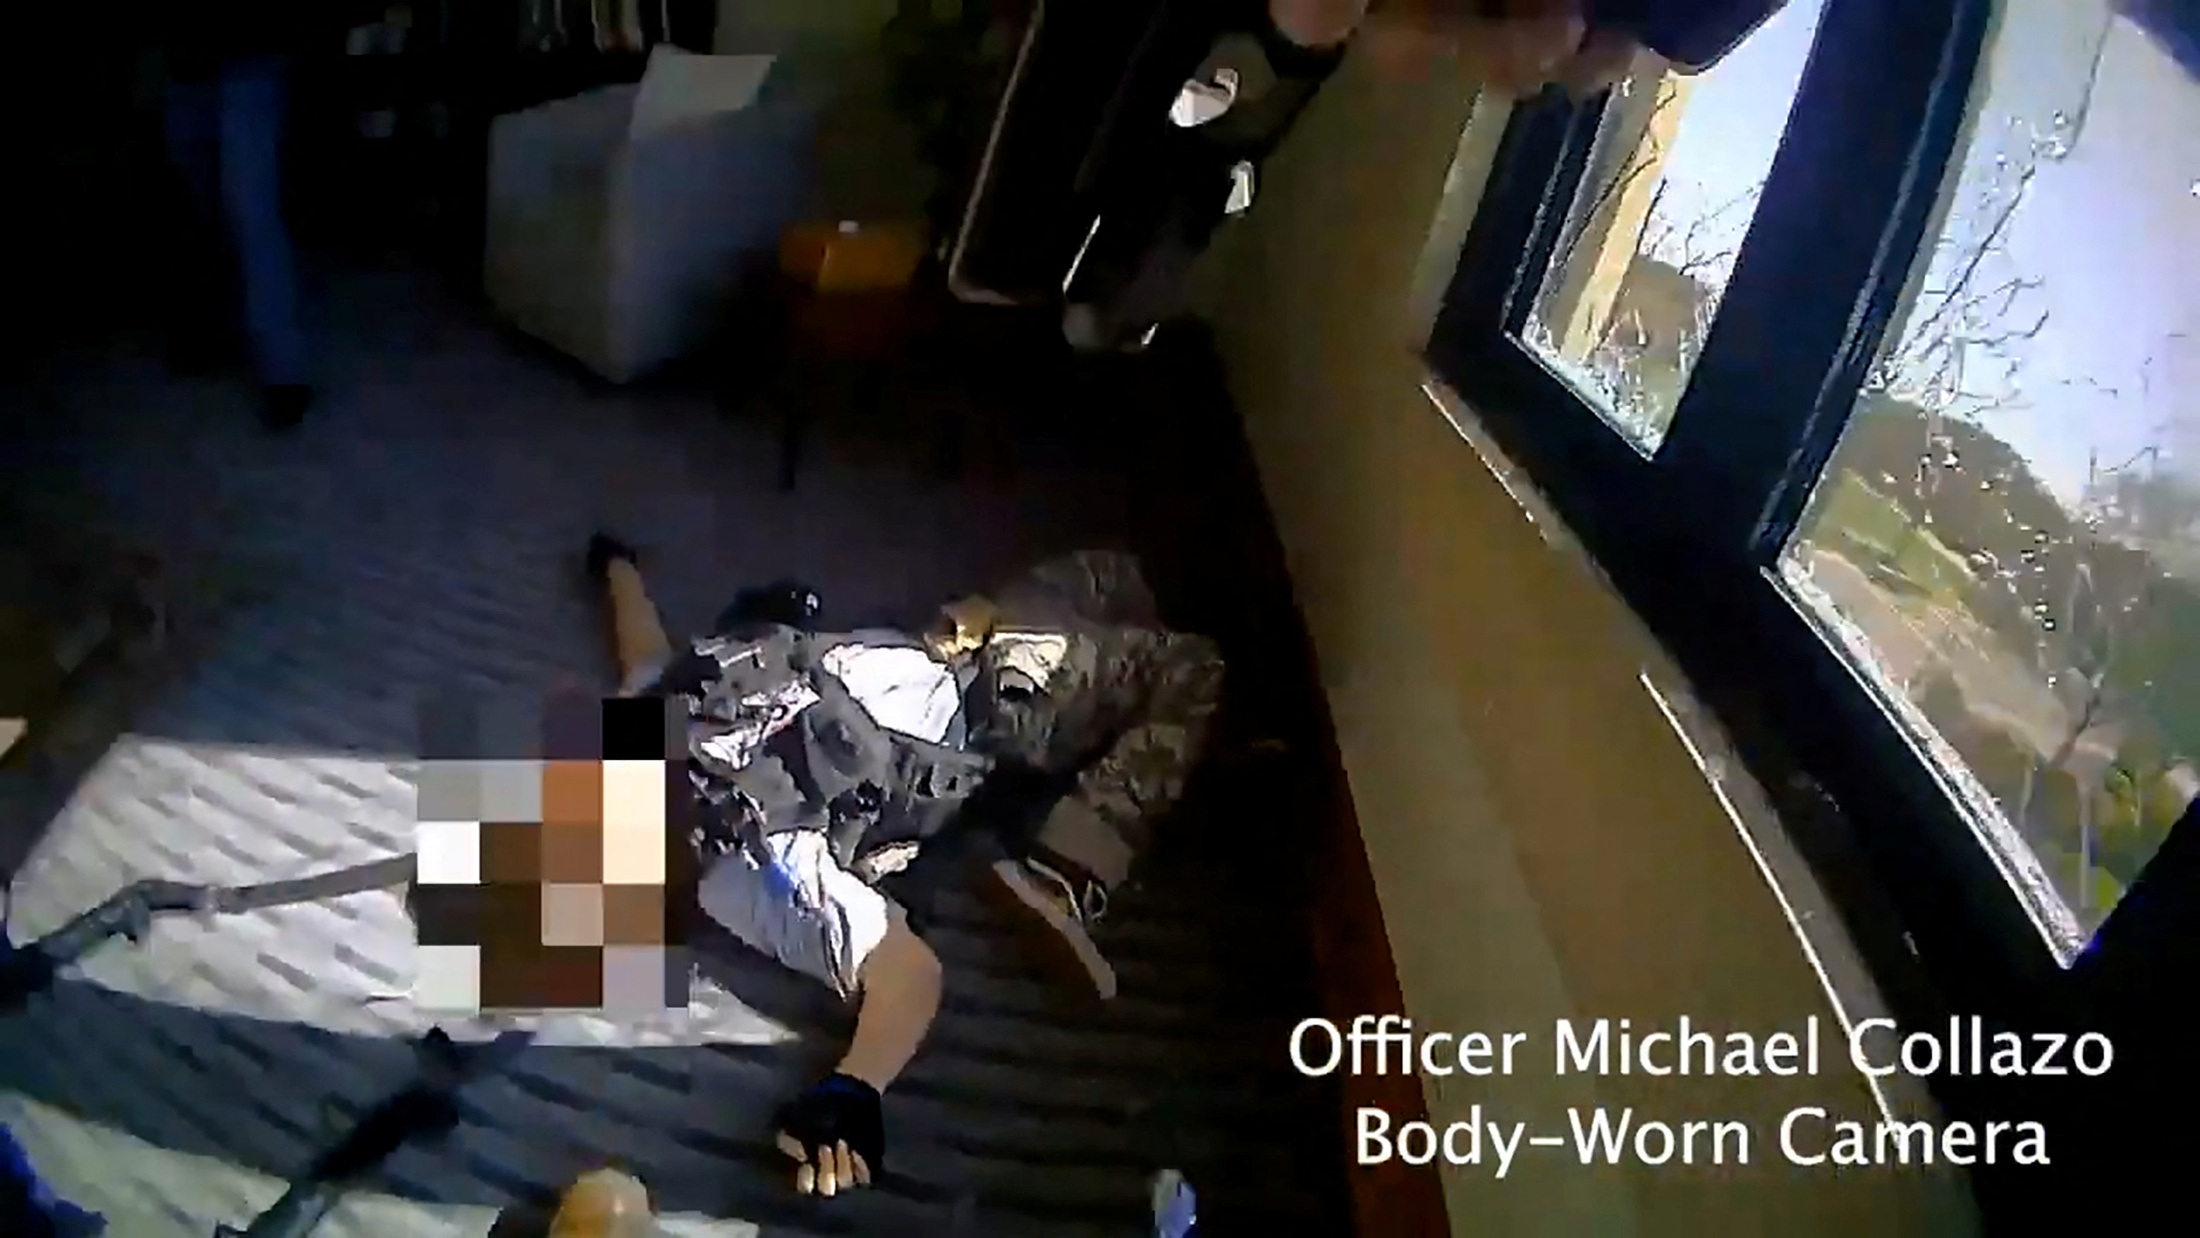 Imagen de la atacante abatida, captada por la cámara corporal del oficial Michael Collazo, de la policía de Nashville 